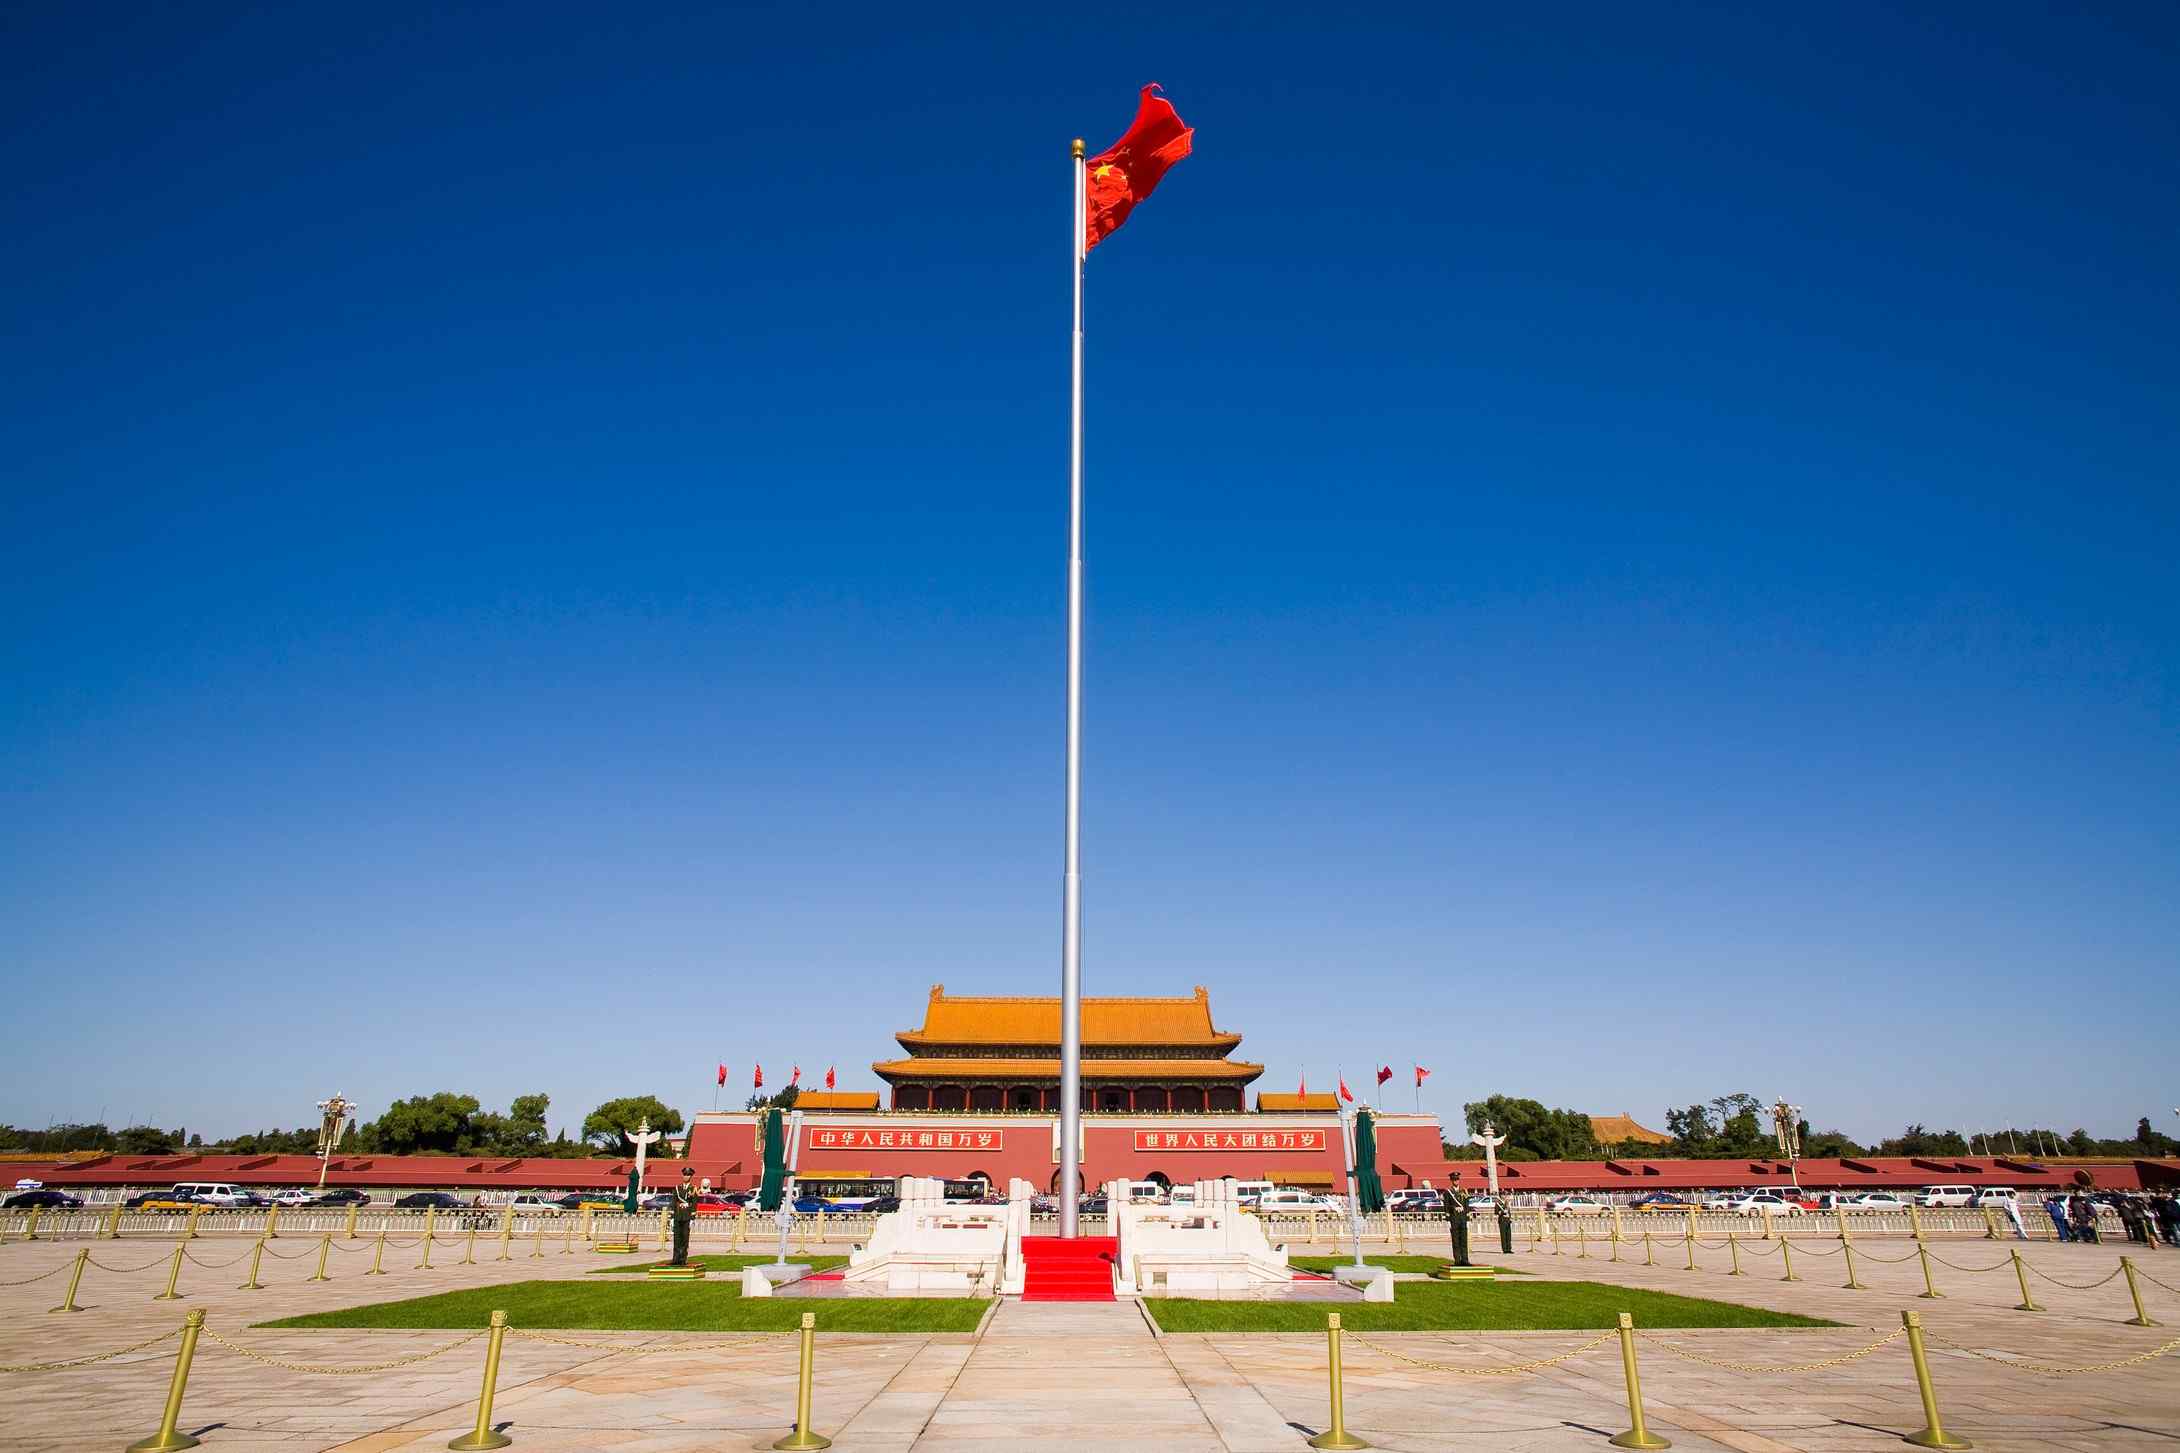 北京风景之天安门国旗飞扬桌面壁纸